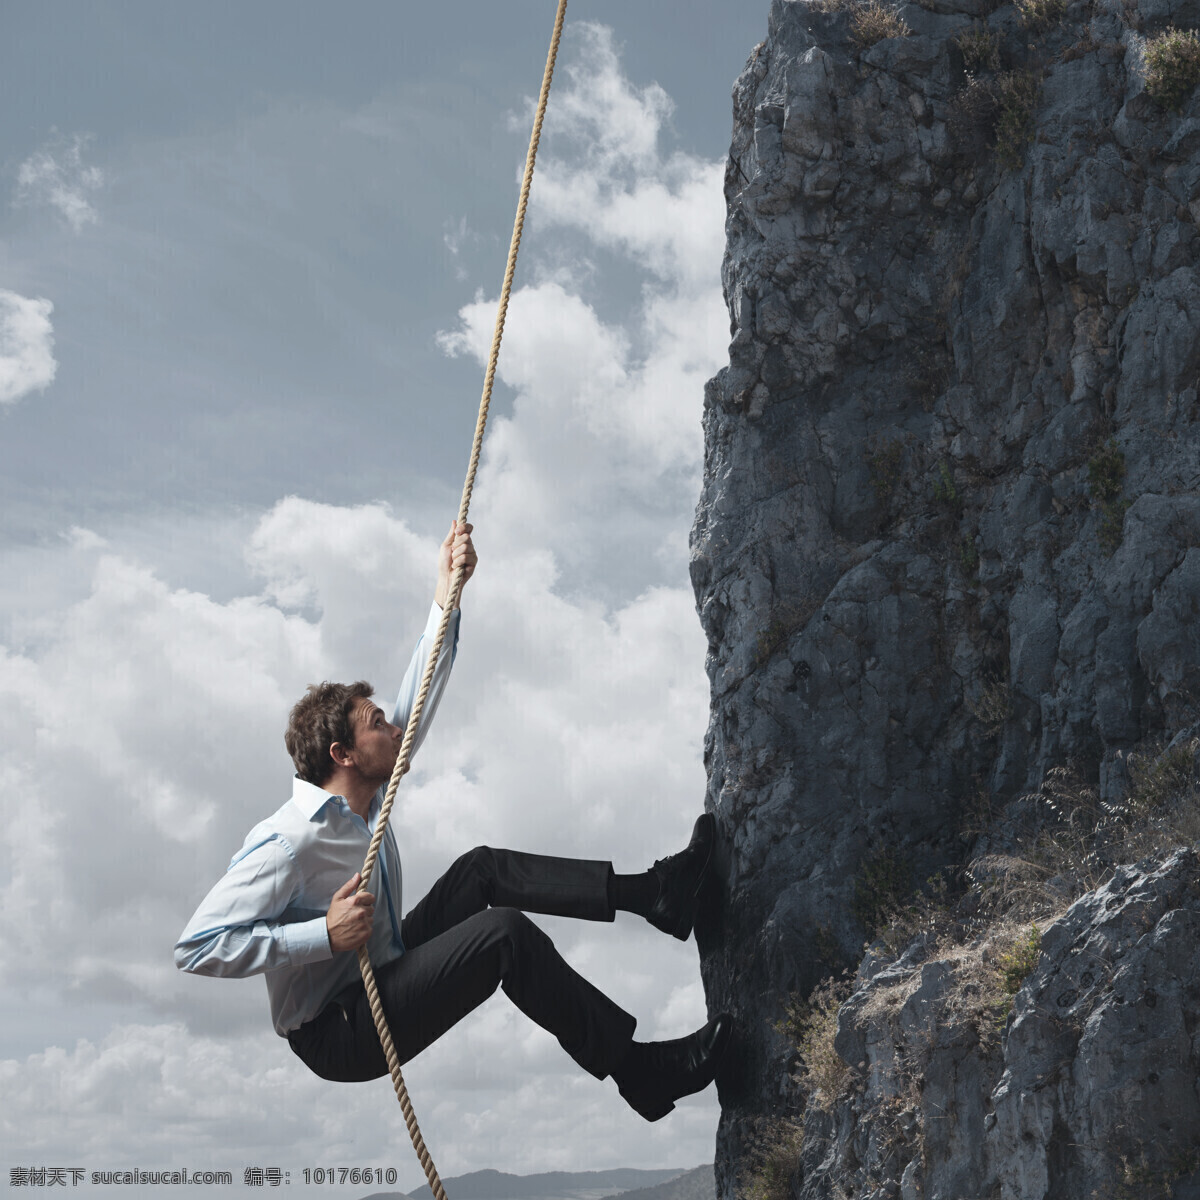 拽 绳子 上 趴 男人 外国男人 爬行 攀岩 高山 天空 云朵 职业人物 商务人士 人物图片